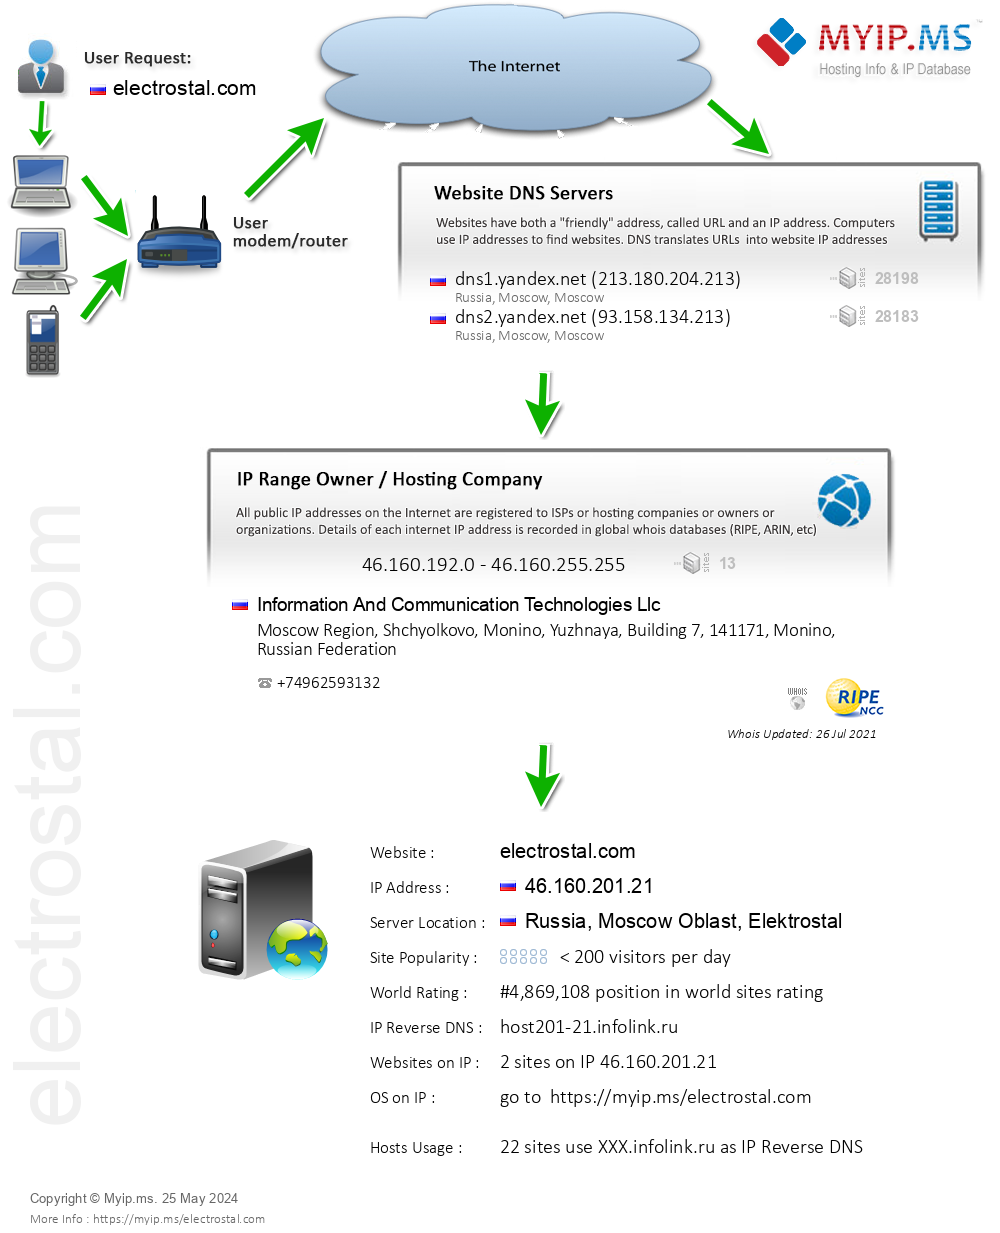 Electrostal.com - Website Hosting Visual IP Diagram